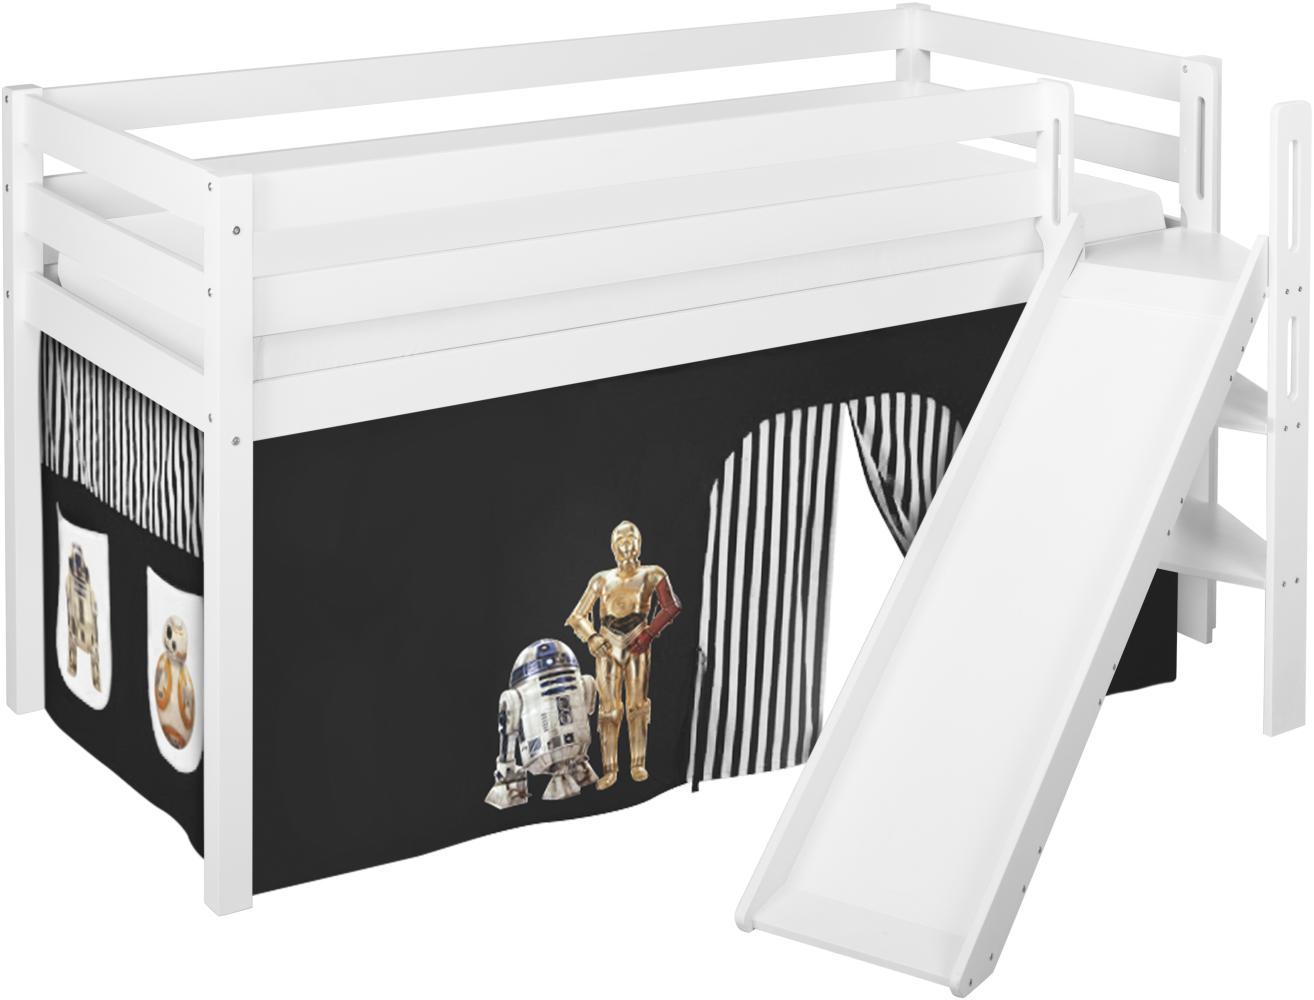 Lilokids 'Jelle' Spielbett 90 x 190 cm, Star Wars Schwarz, Kiefer massiv, mit schräger Rutsche und Vorhang Bild 1